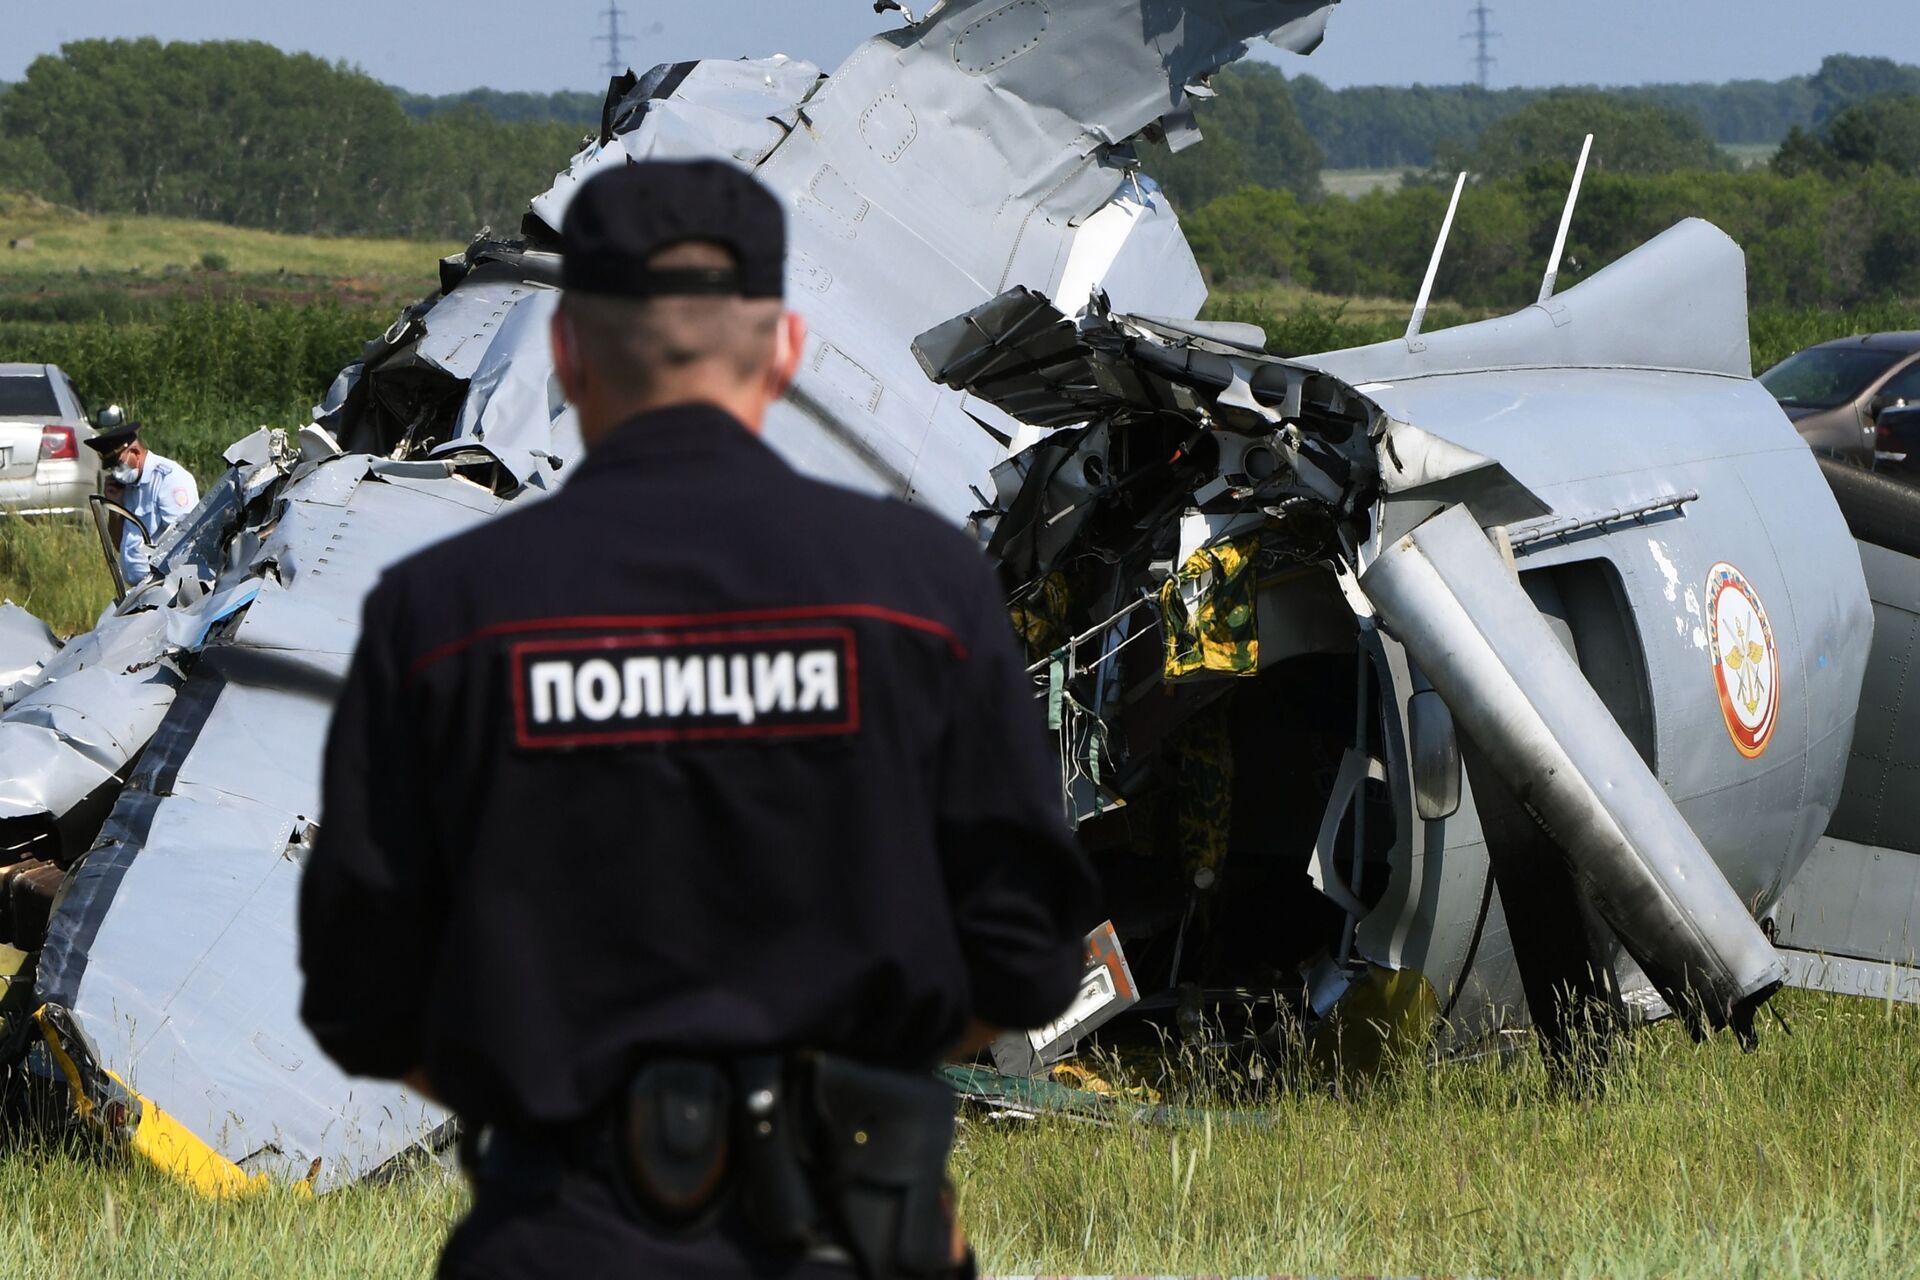 Ռուսաստանում ինքնաթիռի կոշտ վայրԷջքի հետևանքով մարդիկ են մահացել - Sputnik Արմենիա, 1920, 19.06.2021